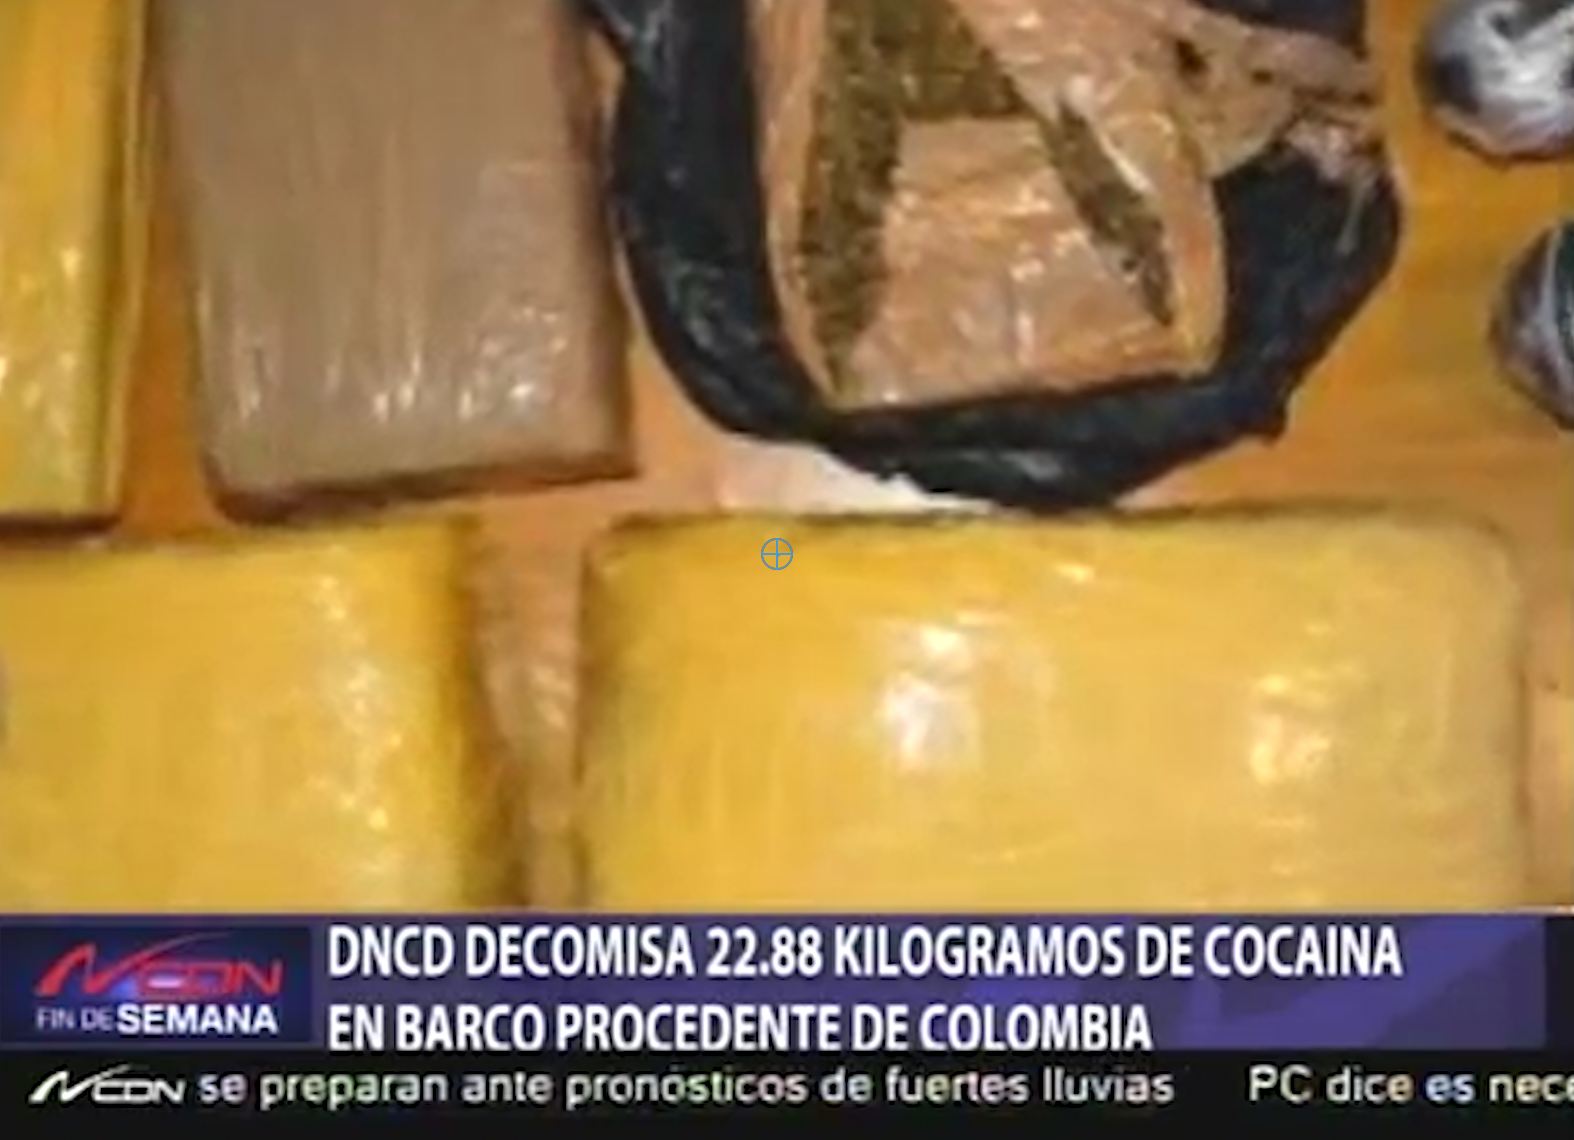 DNCD Decomisa 22.88 Kg De Cocaina En Barco Procedente De Colombia